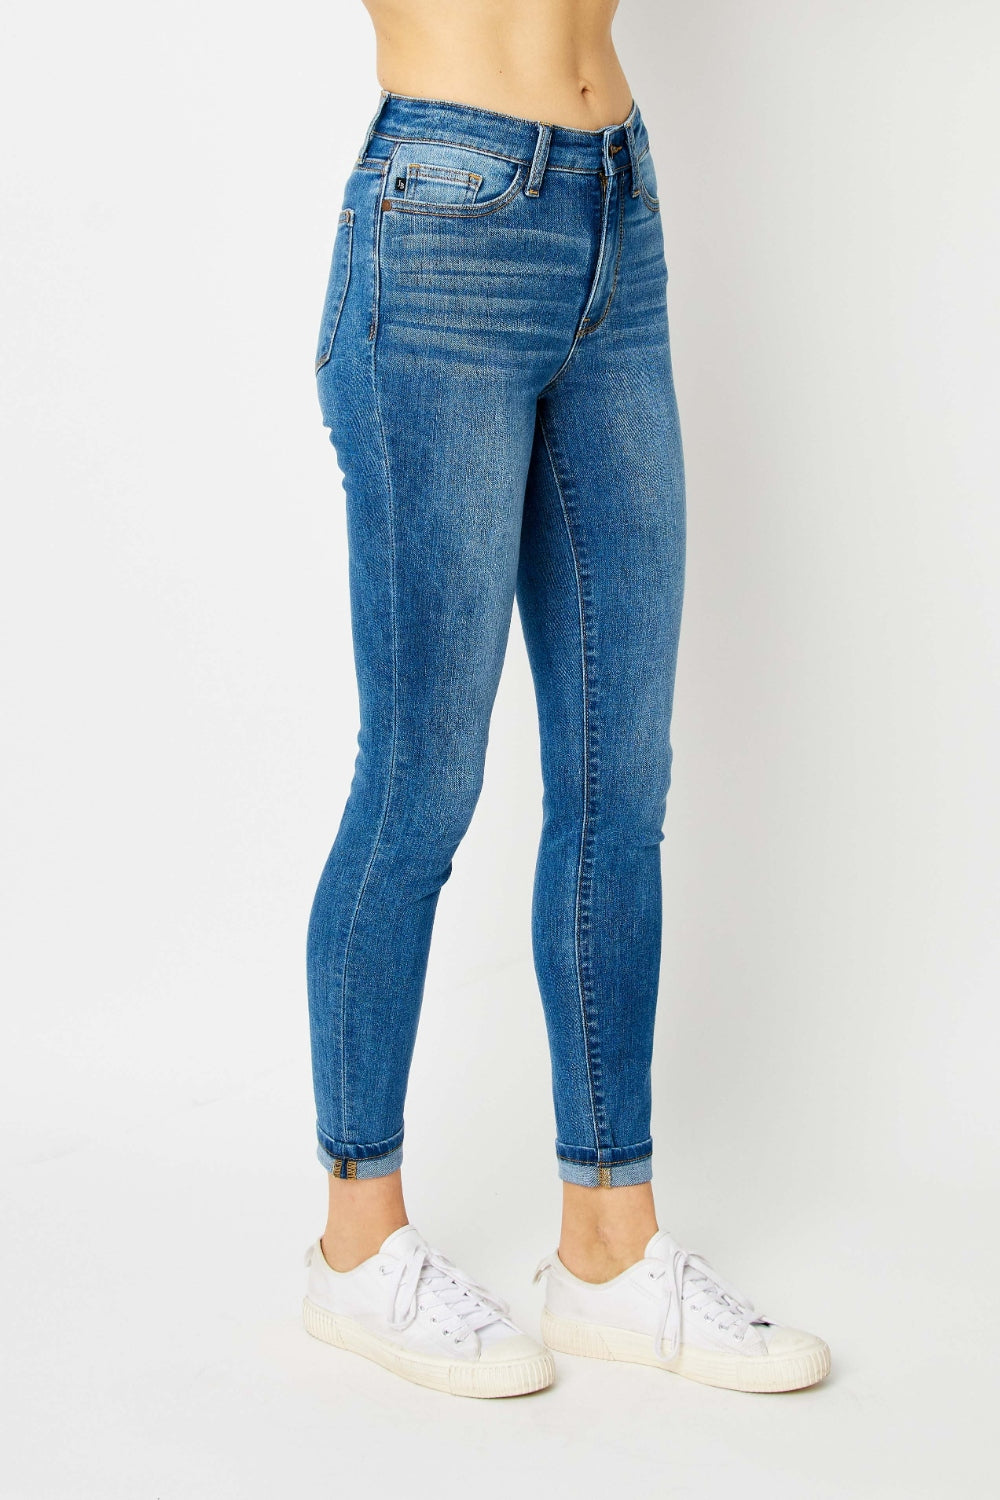 Side View, Judy Blue, Classic Cuffed Hem Skinny Jeans